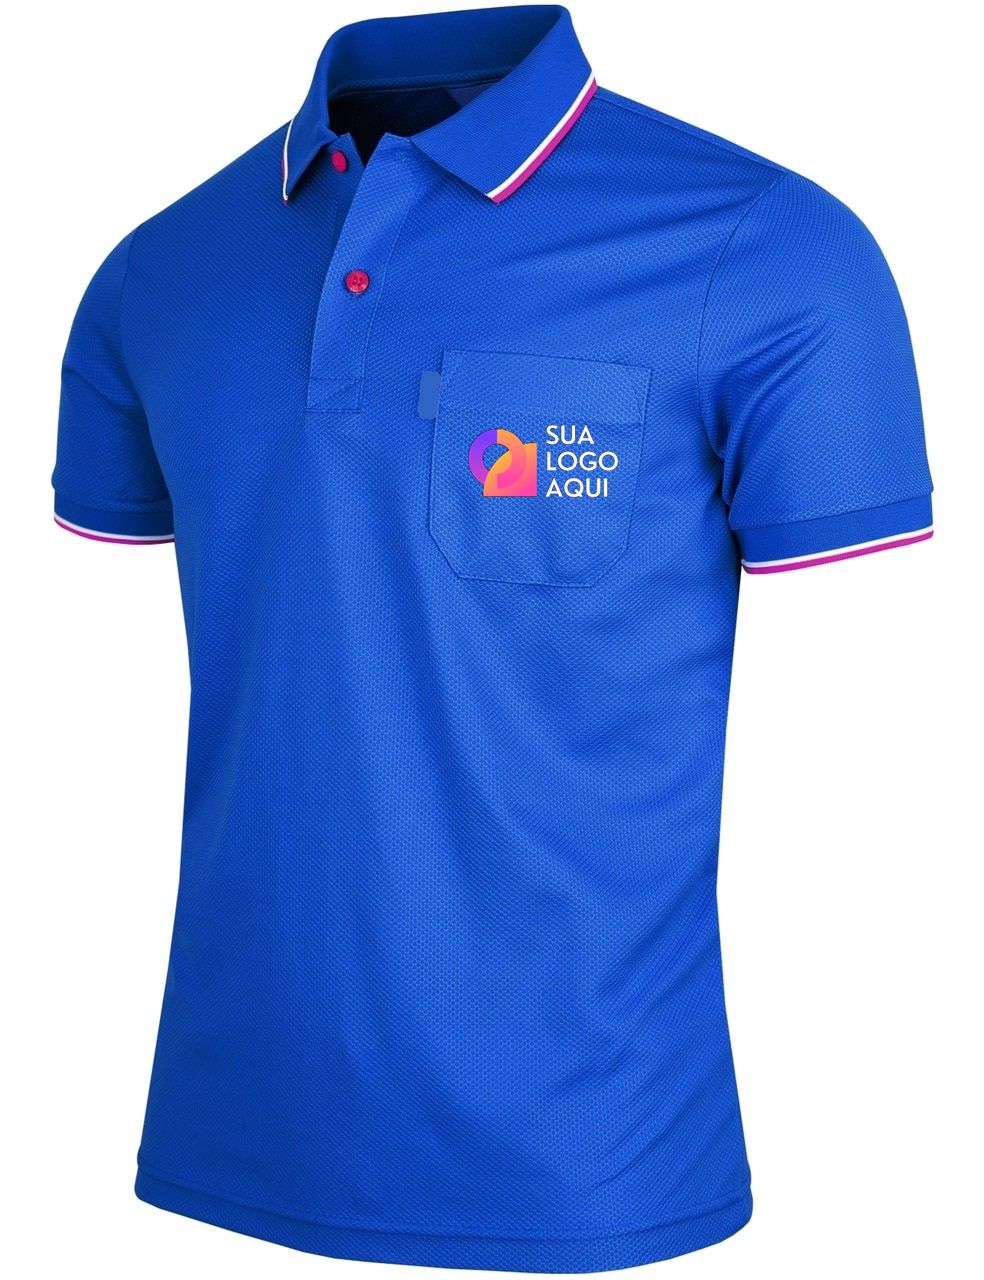 Camiseta gola polo masculina com ou sem bolso - Uniformes Profissionais